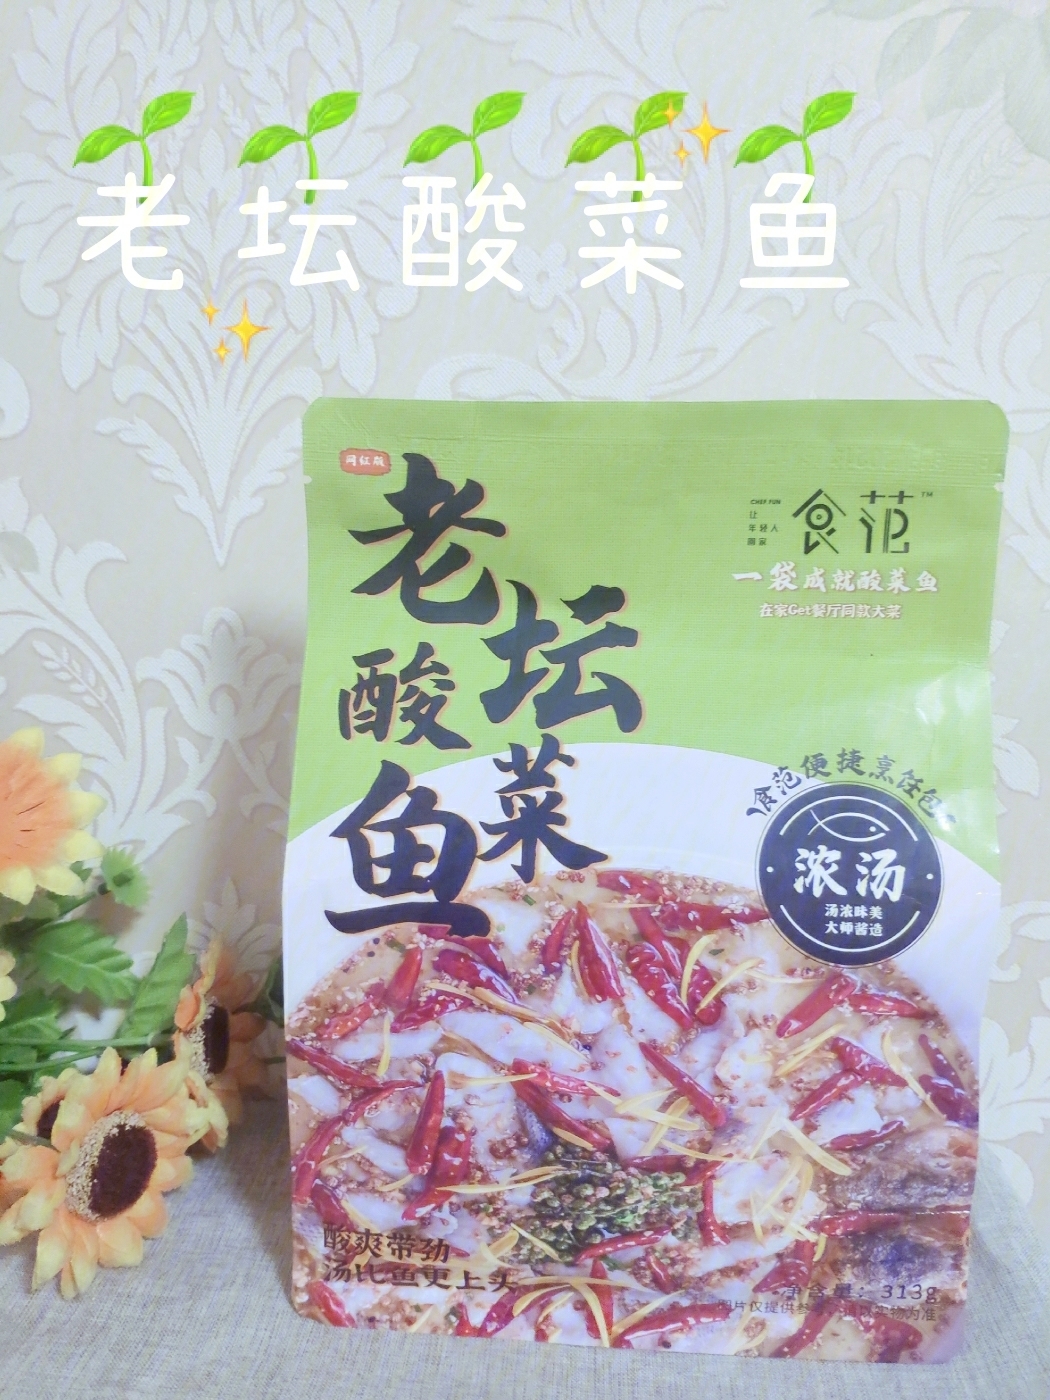 食材:鱼片,食范老坛酸菜鱼调料包,葱姜蒜制作方法:1,食范老坛酸菜鱼